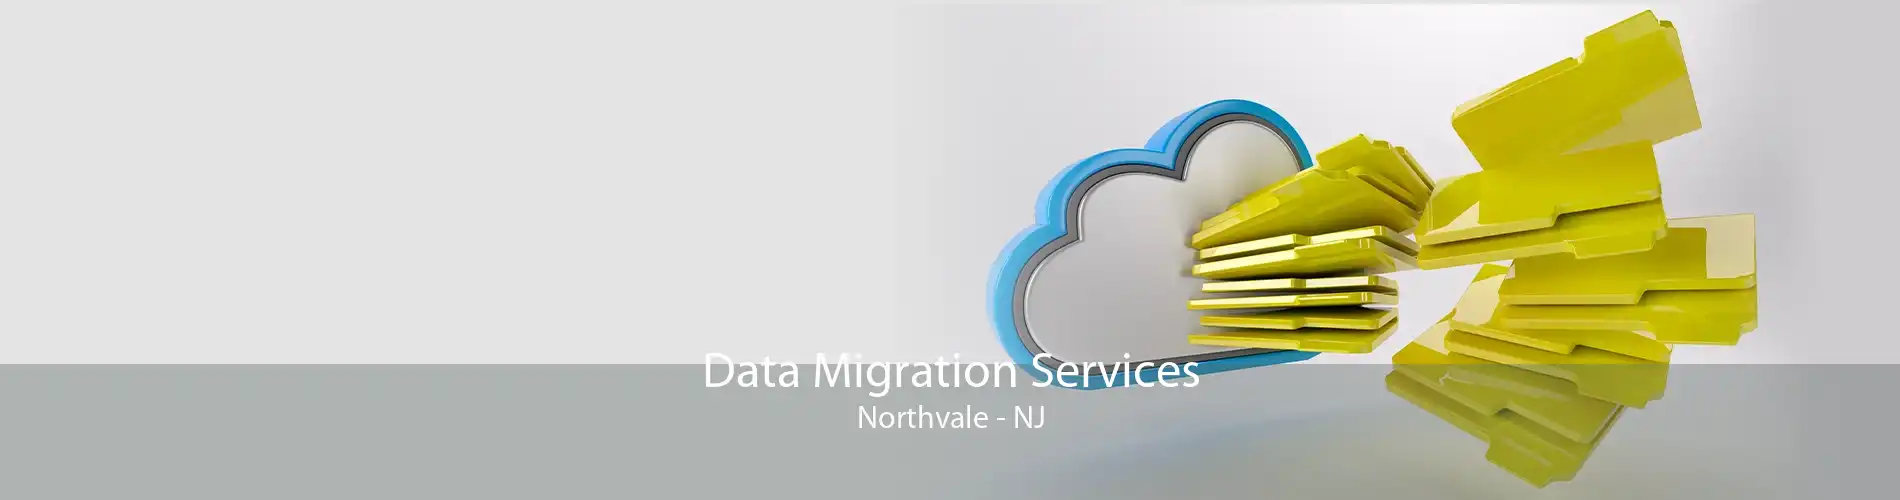 Data Migration Services Northvale - NJ